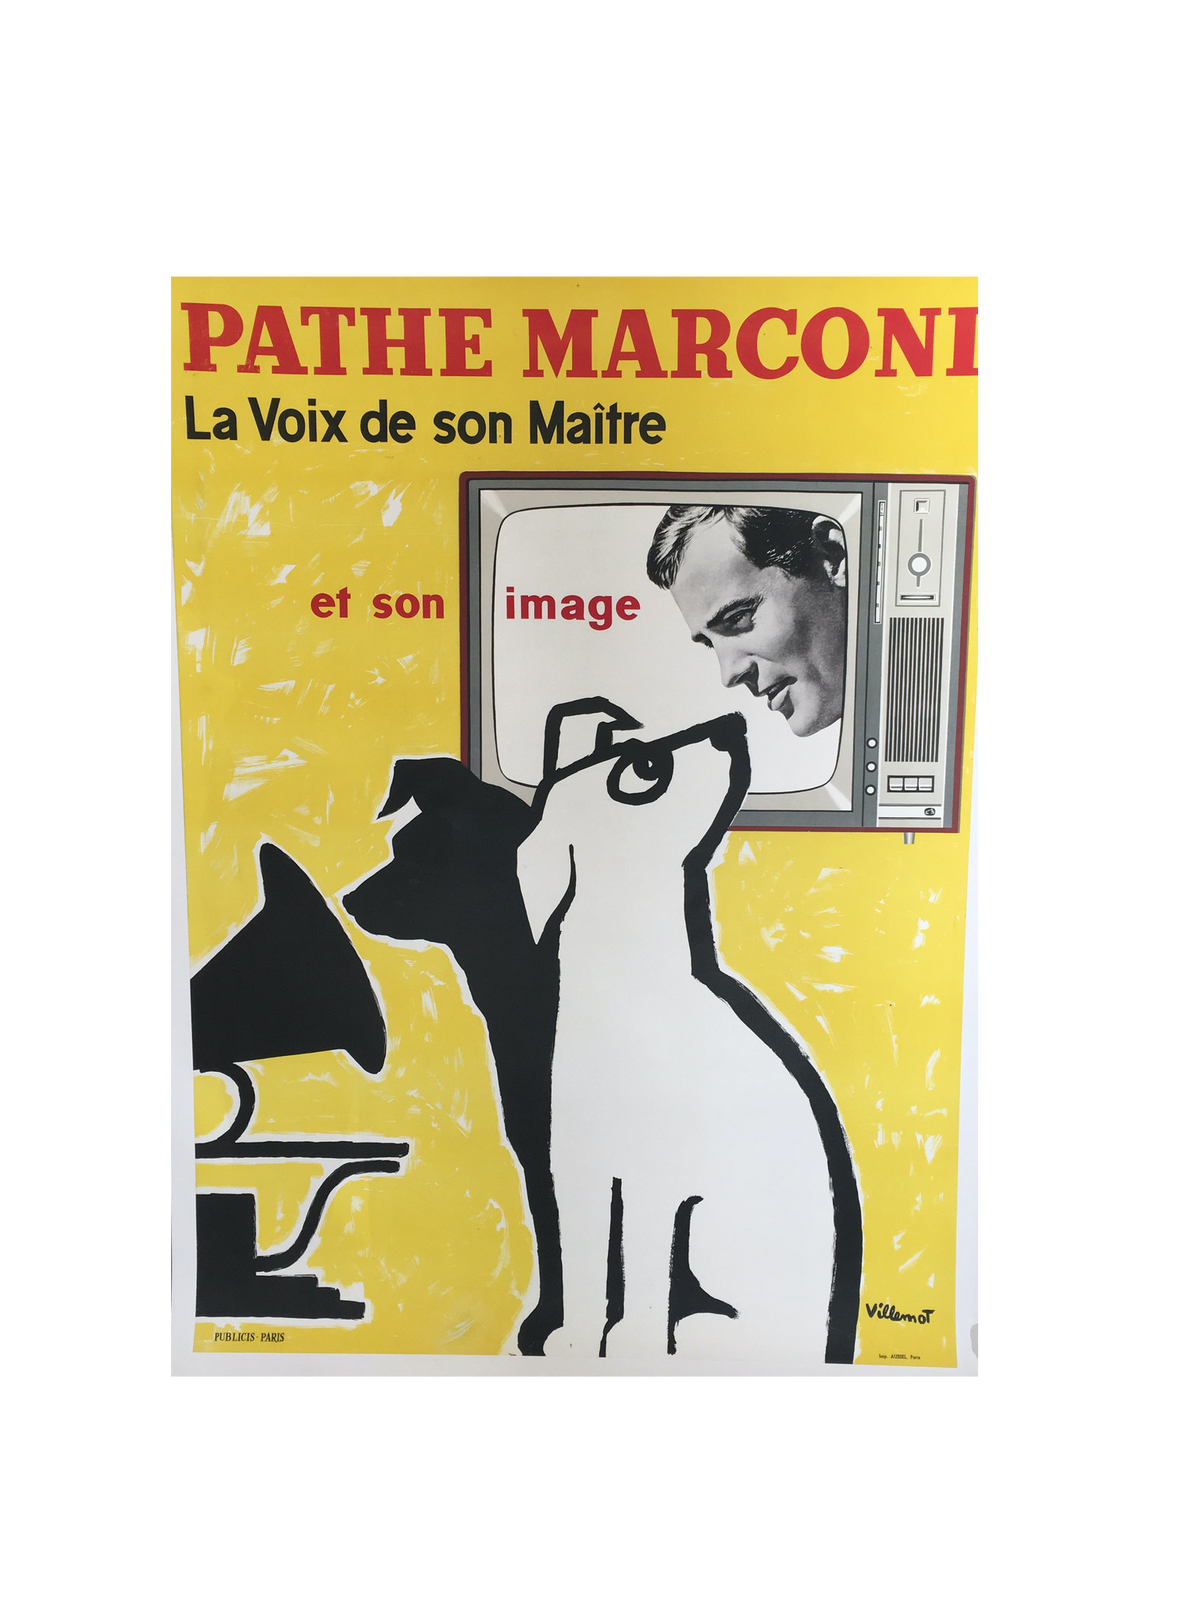 Pathe Marconi by Bernard Villemot